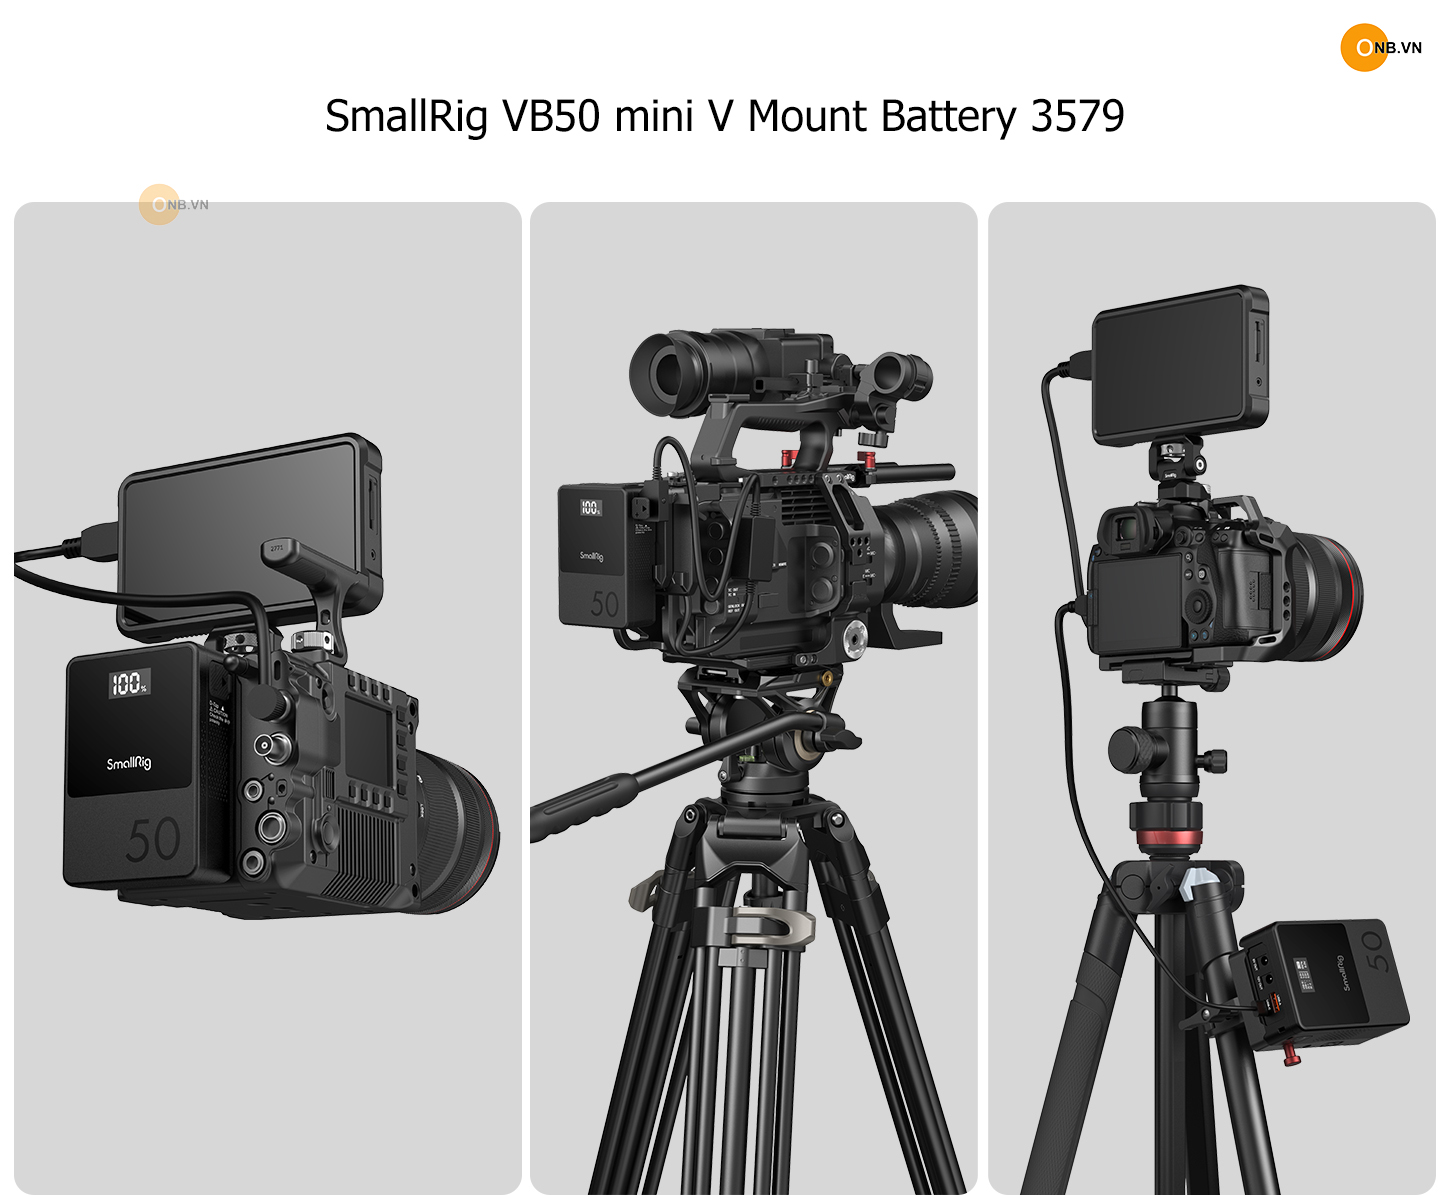 SmallRig VB50 mini V Mount Battery - Pin V Mount mẫu mới 3579